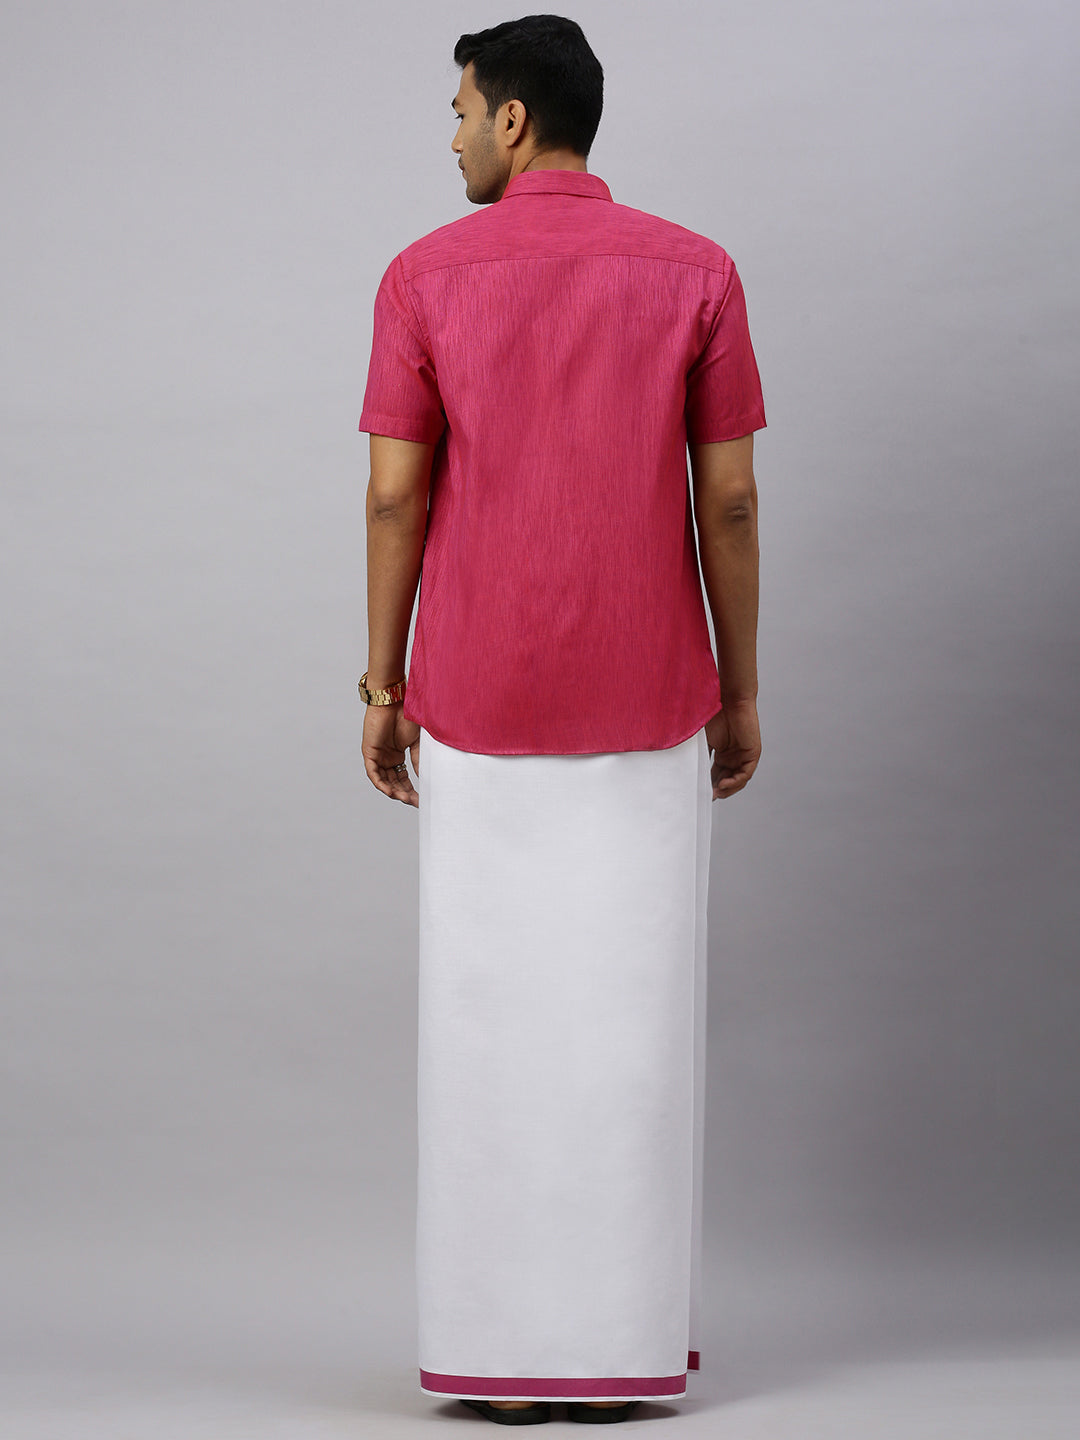 Mens Magenta Matching Border Dhoti & Half Sleeves Shirt Set CV2